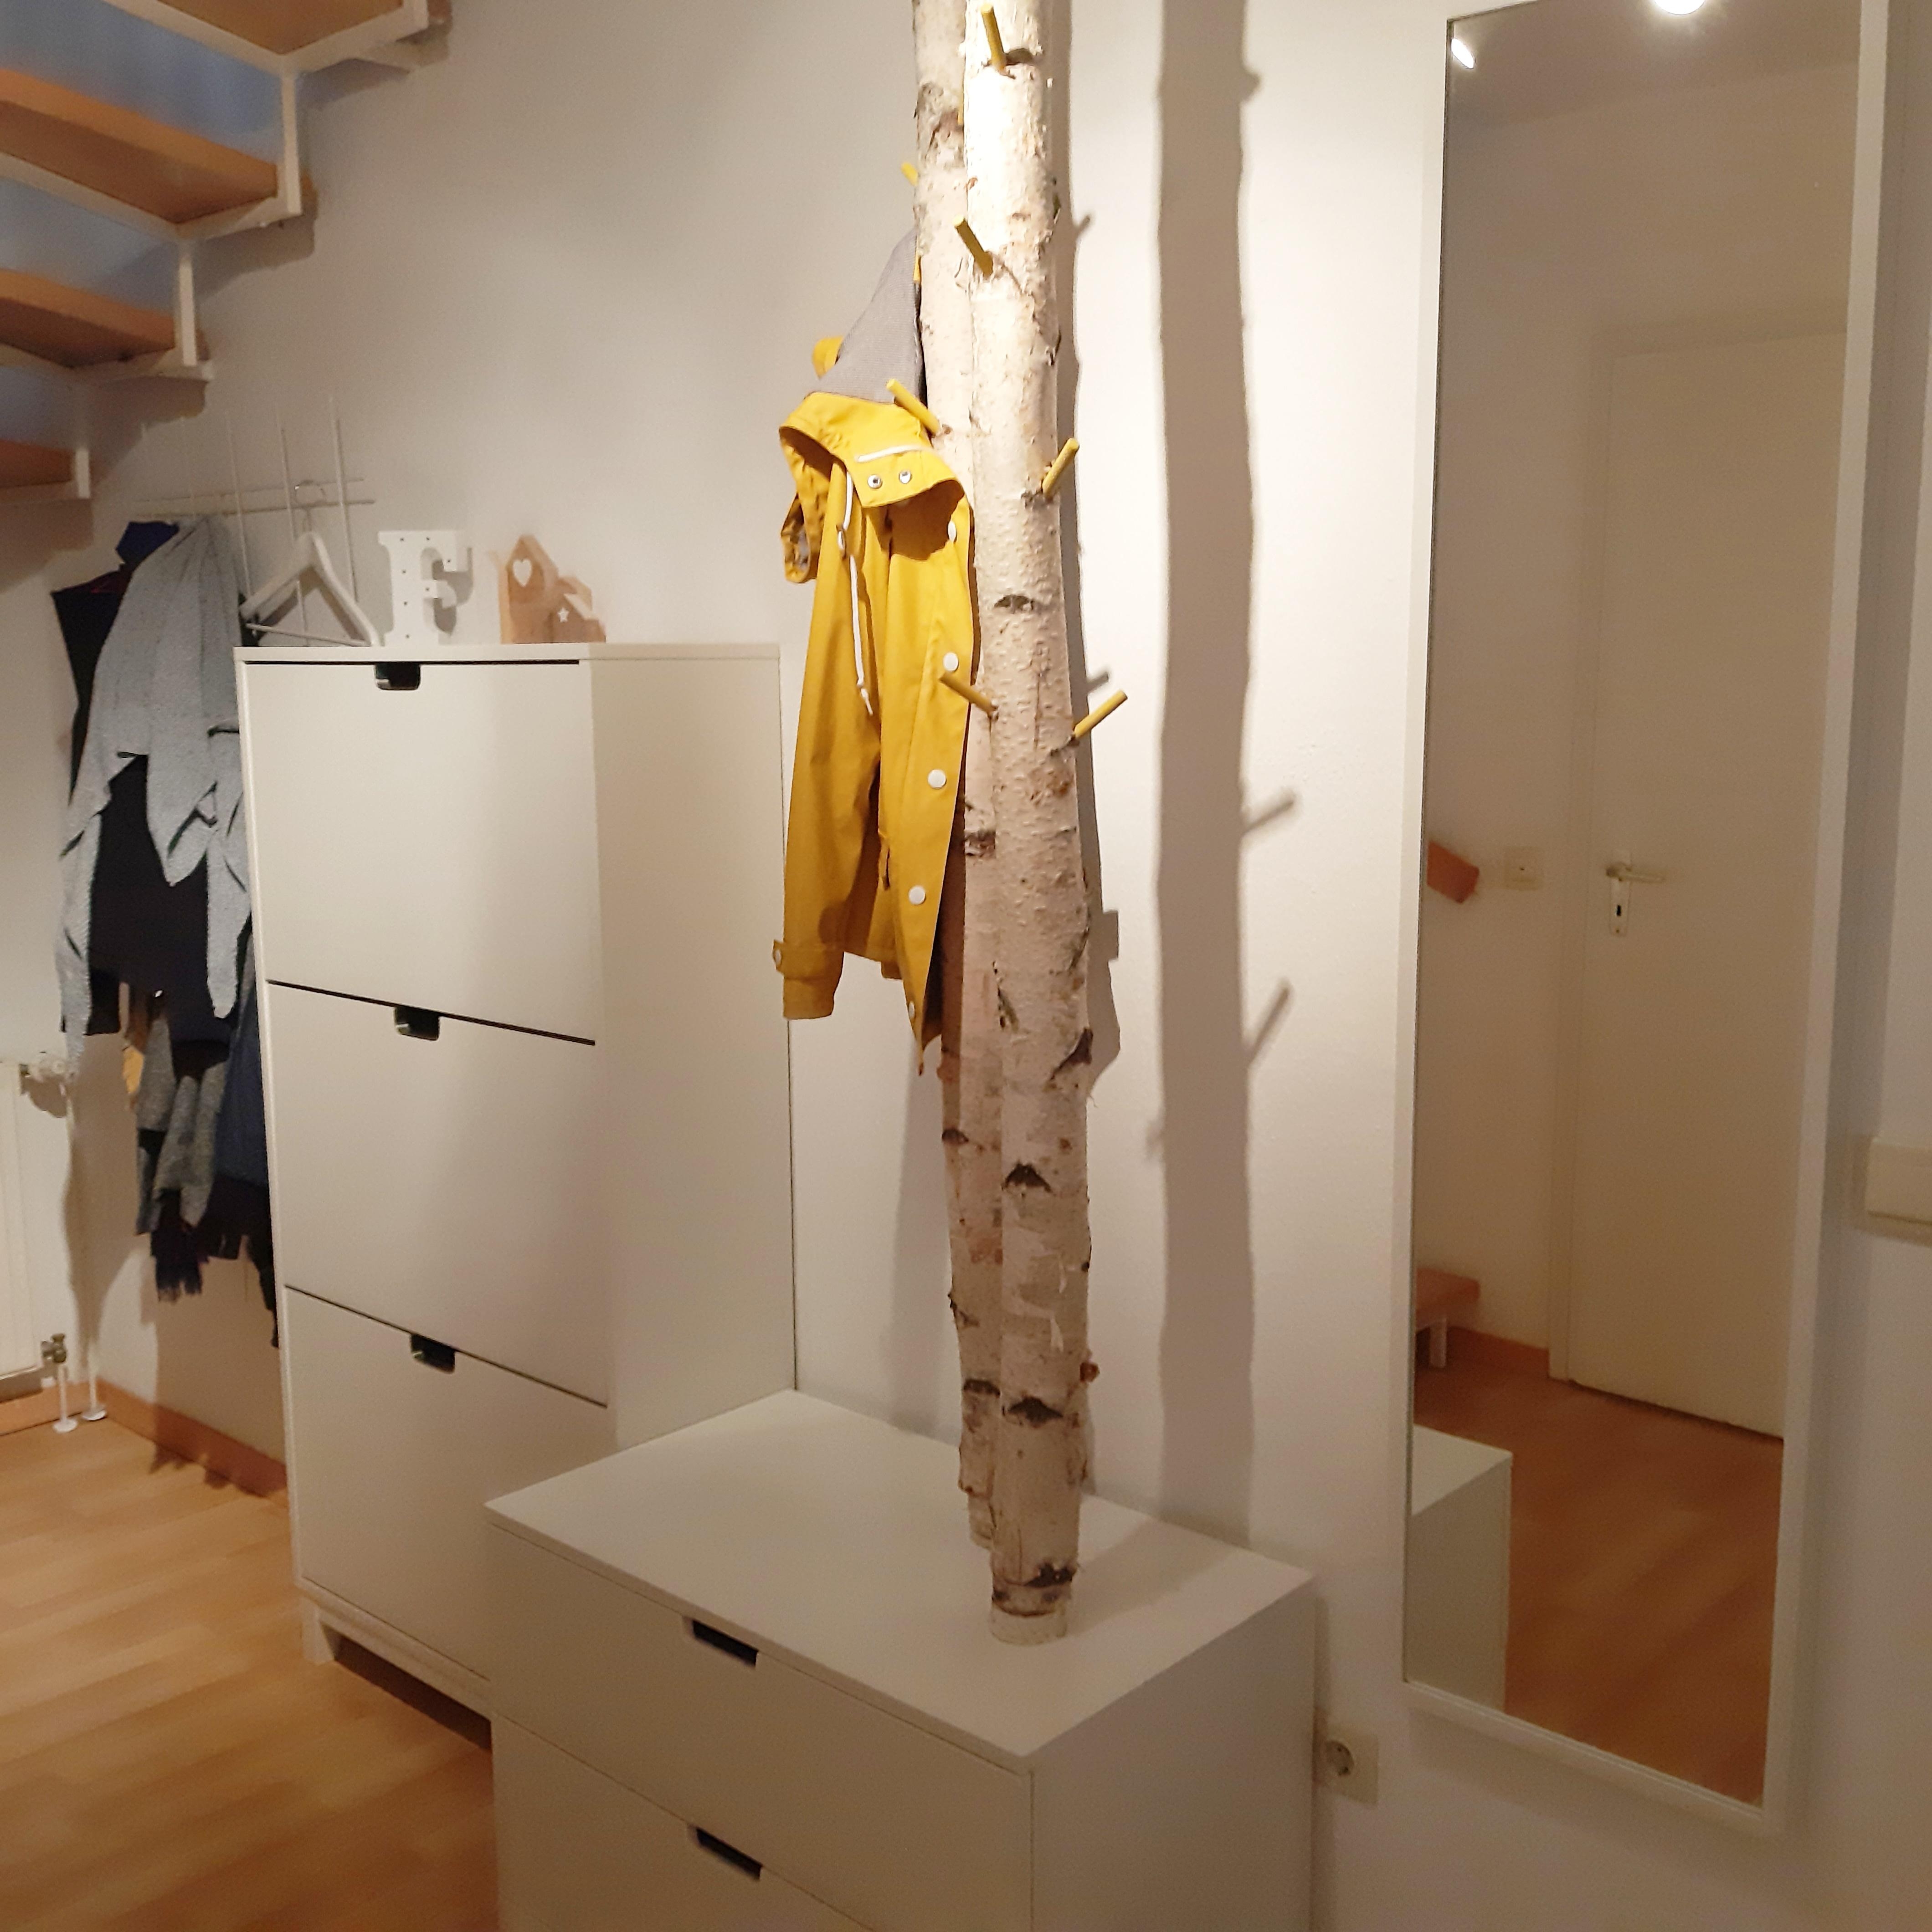 Herzlich Willkommen Zuhause! :) Die Garderobe war ein #diy Projekt von uns ich freue mich jedes Mal sie zu sehen. 